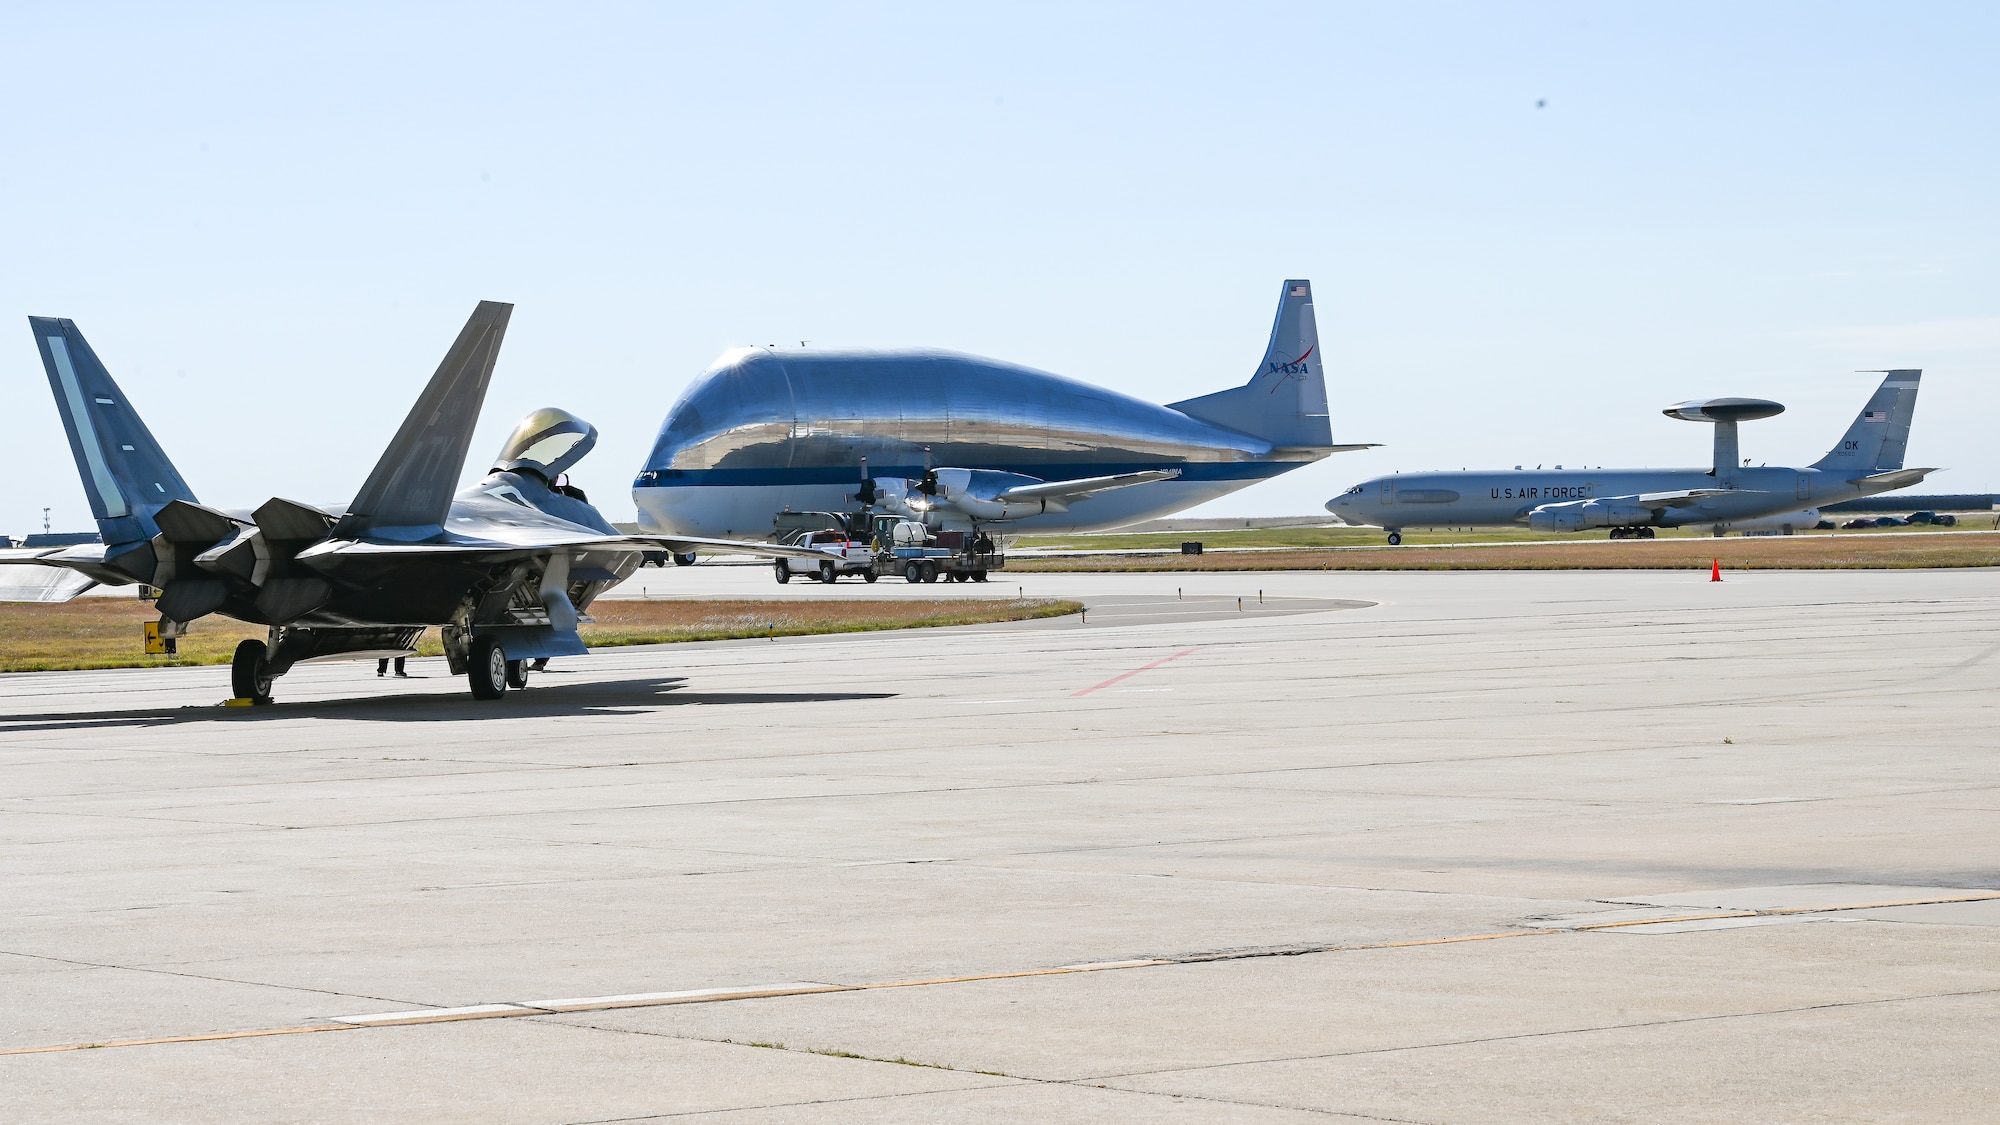 F-22 Raptor aircraft, NASA Super Guppy aircraft and E-3 Sentry aircraft on ramp